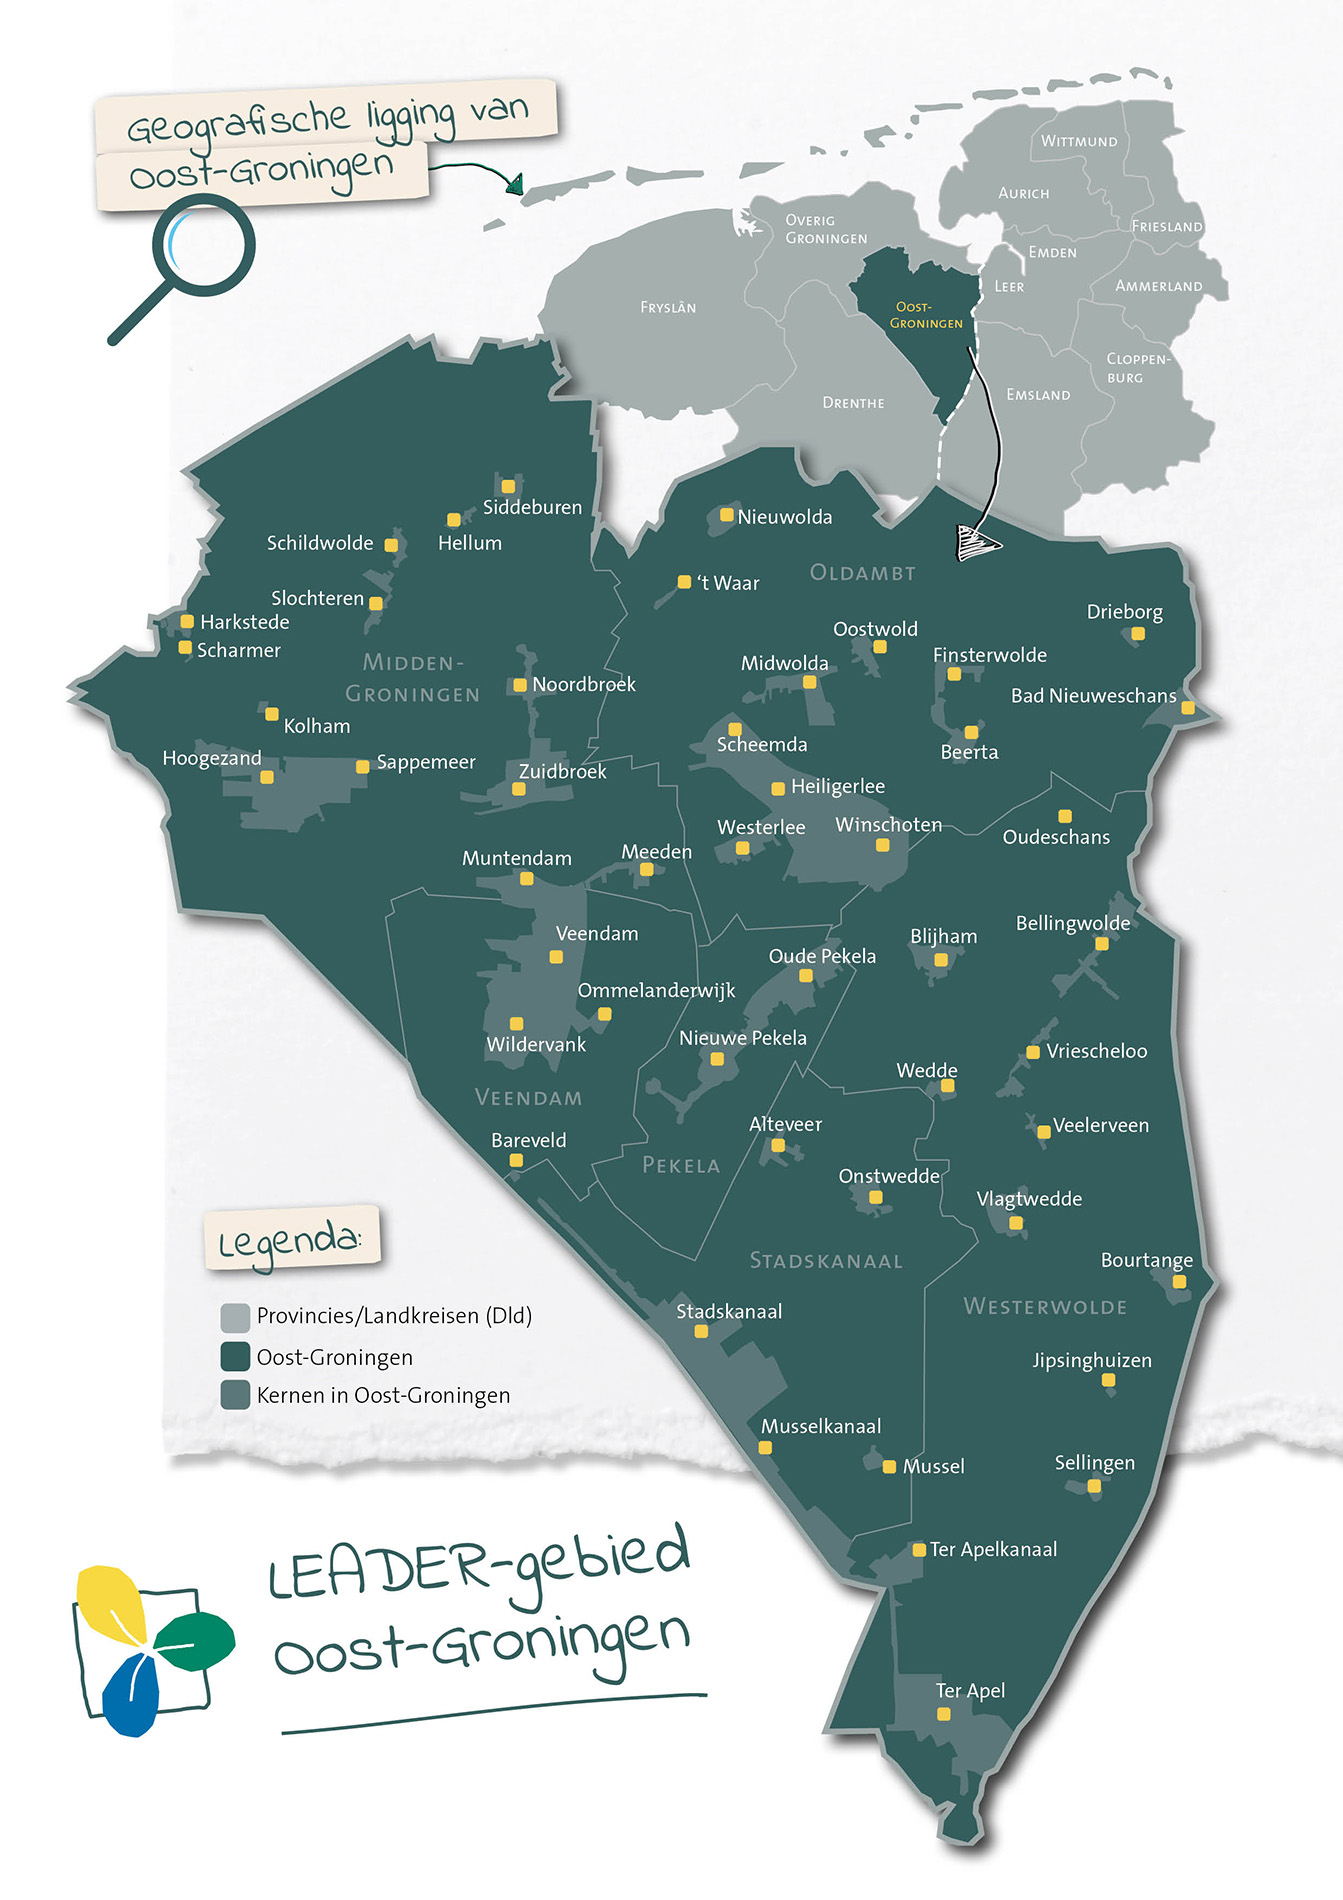 Plattegrond LEADER-gebied Oost-Groningen getekend door JantyDesign